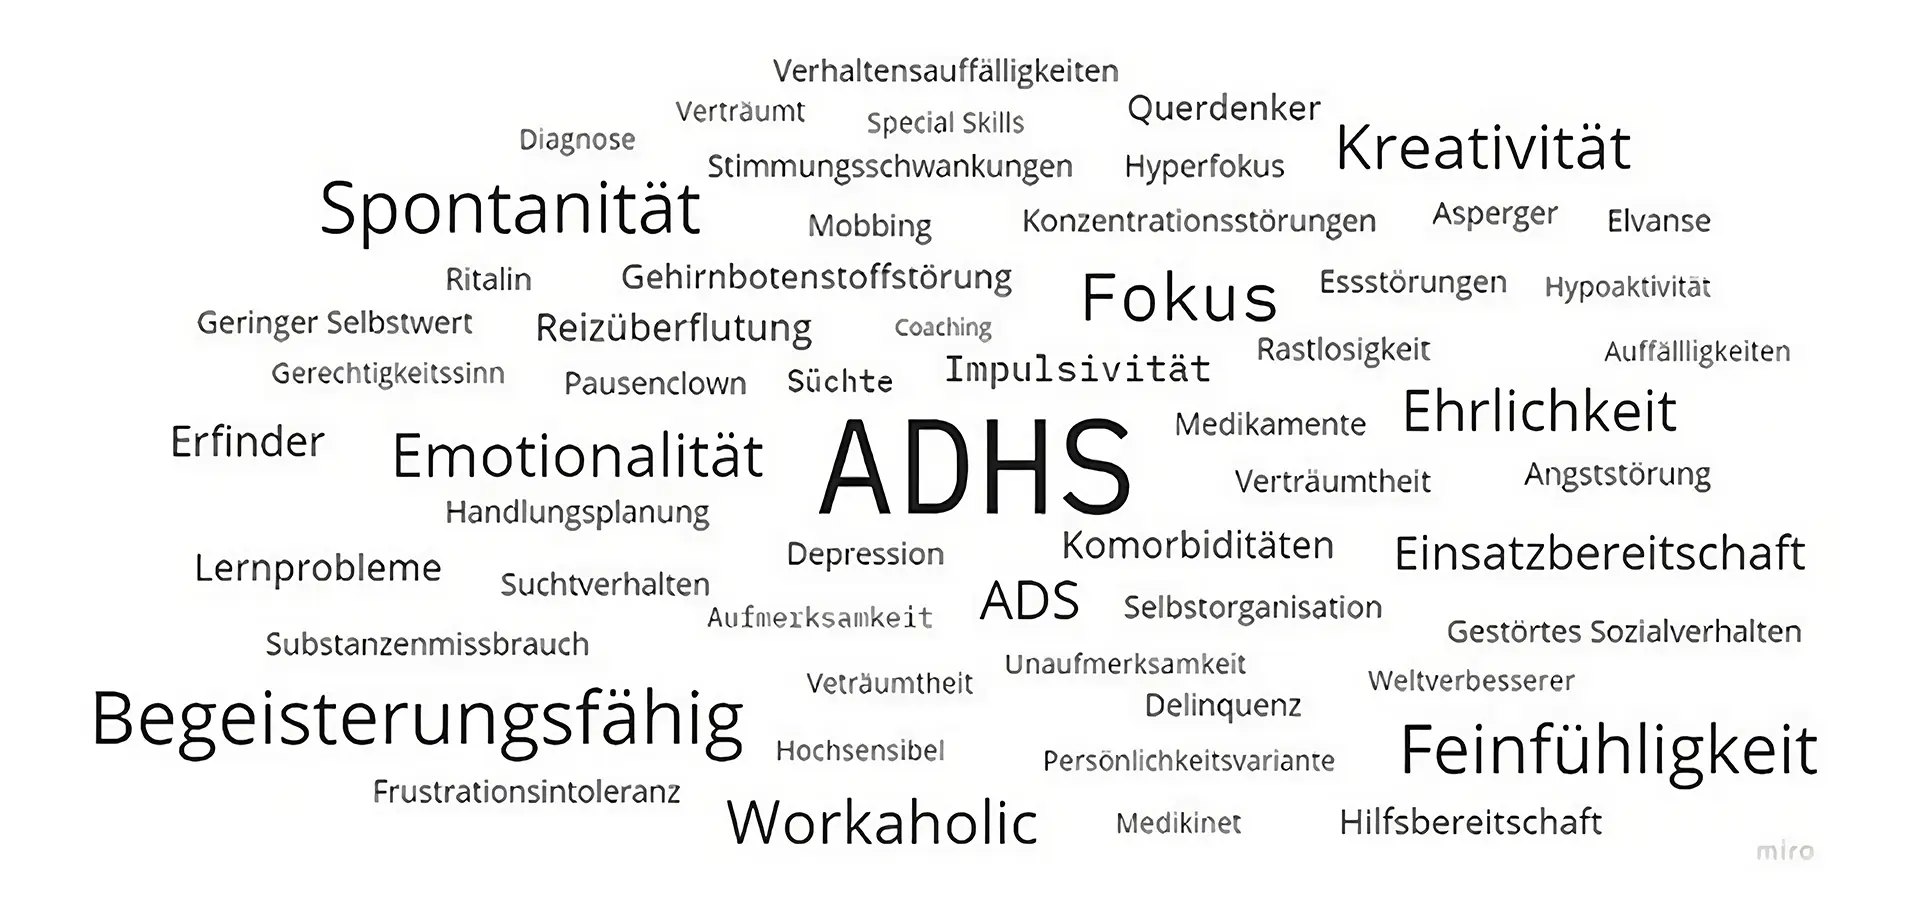 Wortwolke zu ADHS mit assoziierten Begriﬀen und Eigenschaften.